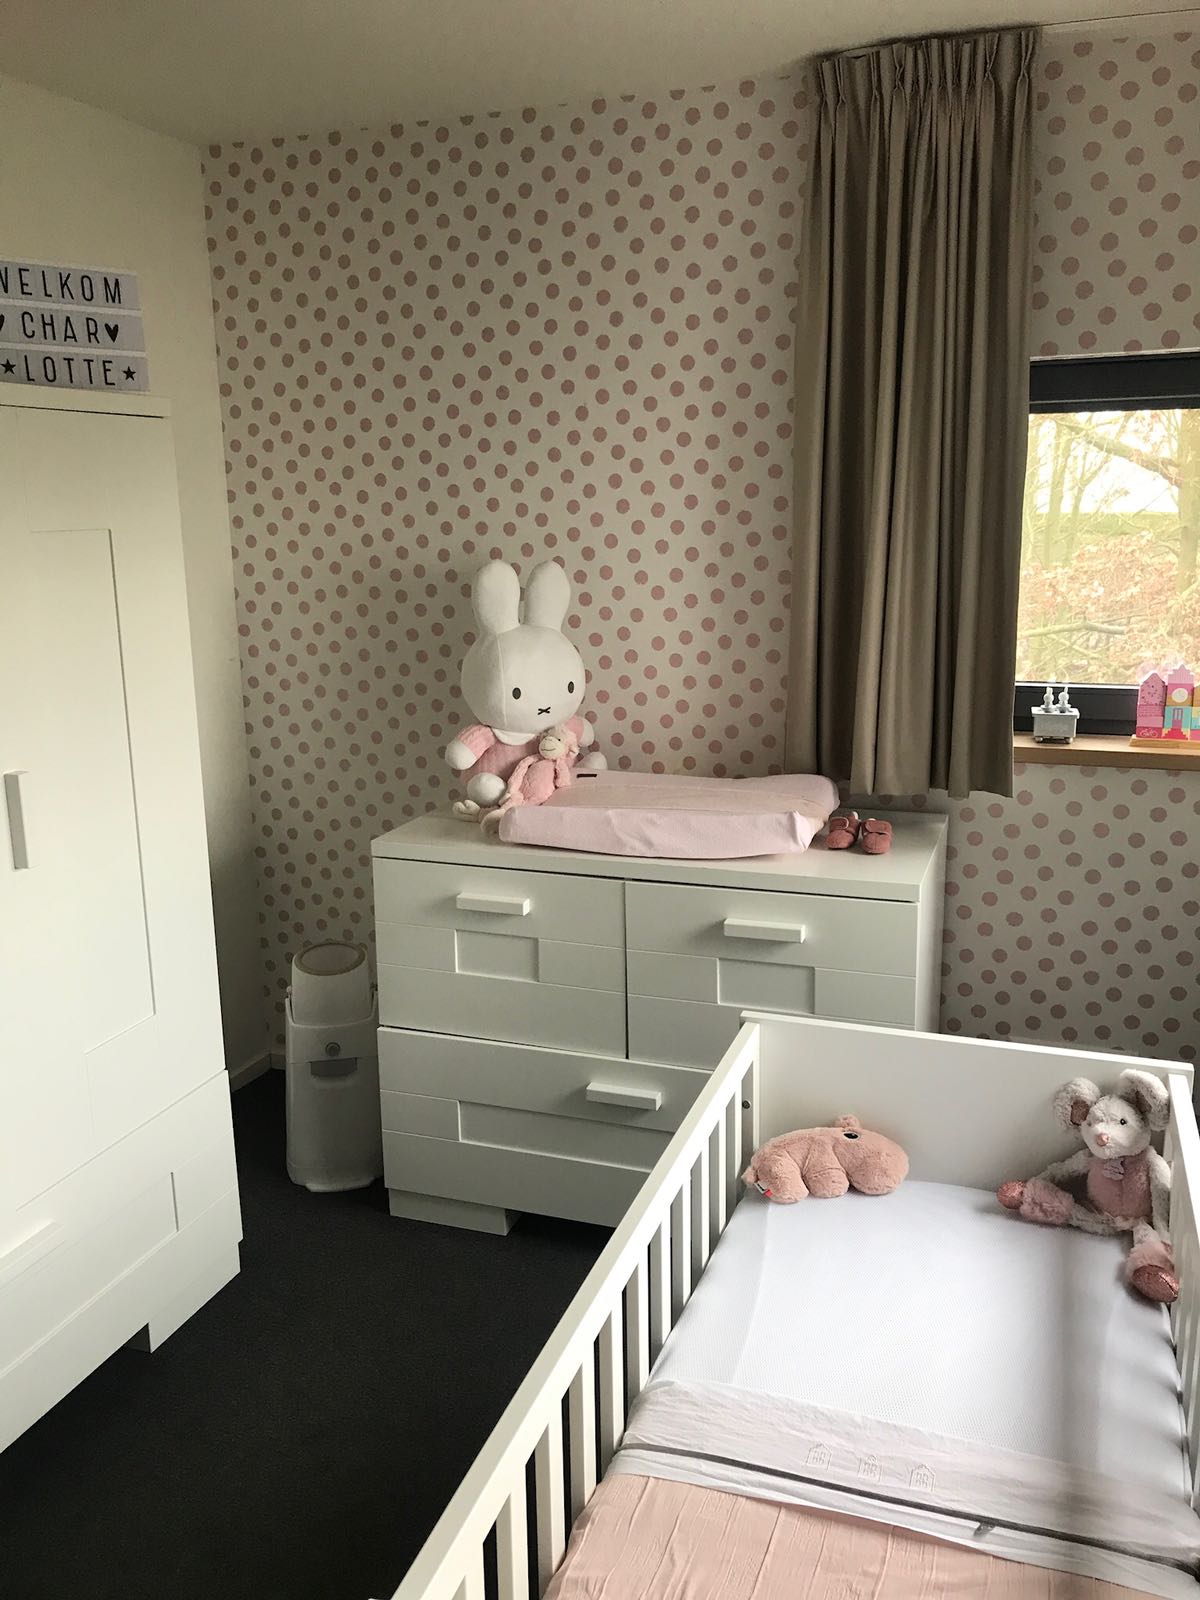 Vandaag deelt Willeke de babykamer van haar dochter Charlotte. Willeke is eigenaresse van een bekend babylabel en weet perfect hoe ze een kamer moet stylen. 